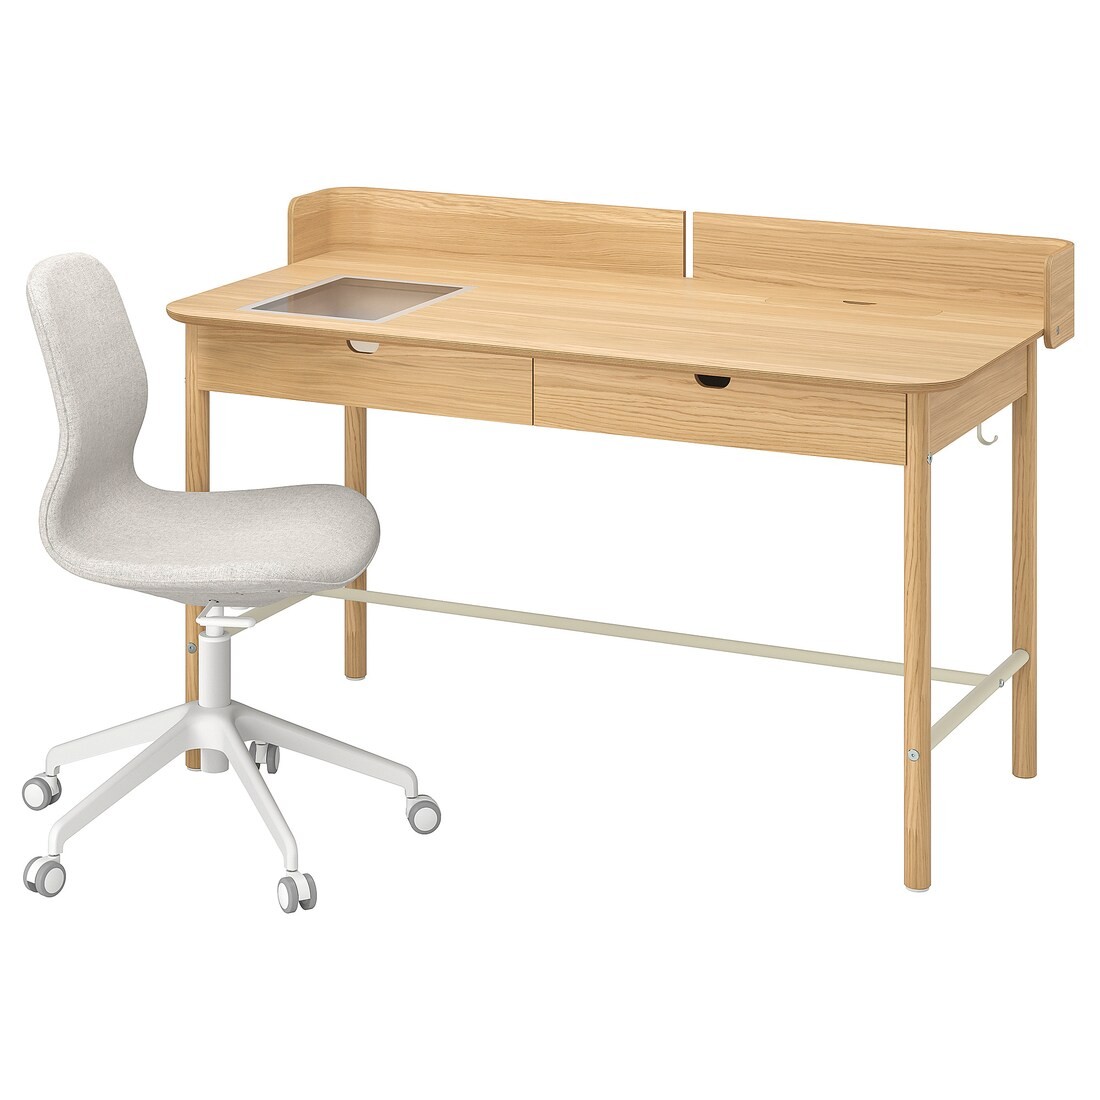 RIDSPÖ / LÅNGFJÄLL Письменный стол и стул, бежевый дуб/белый